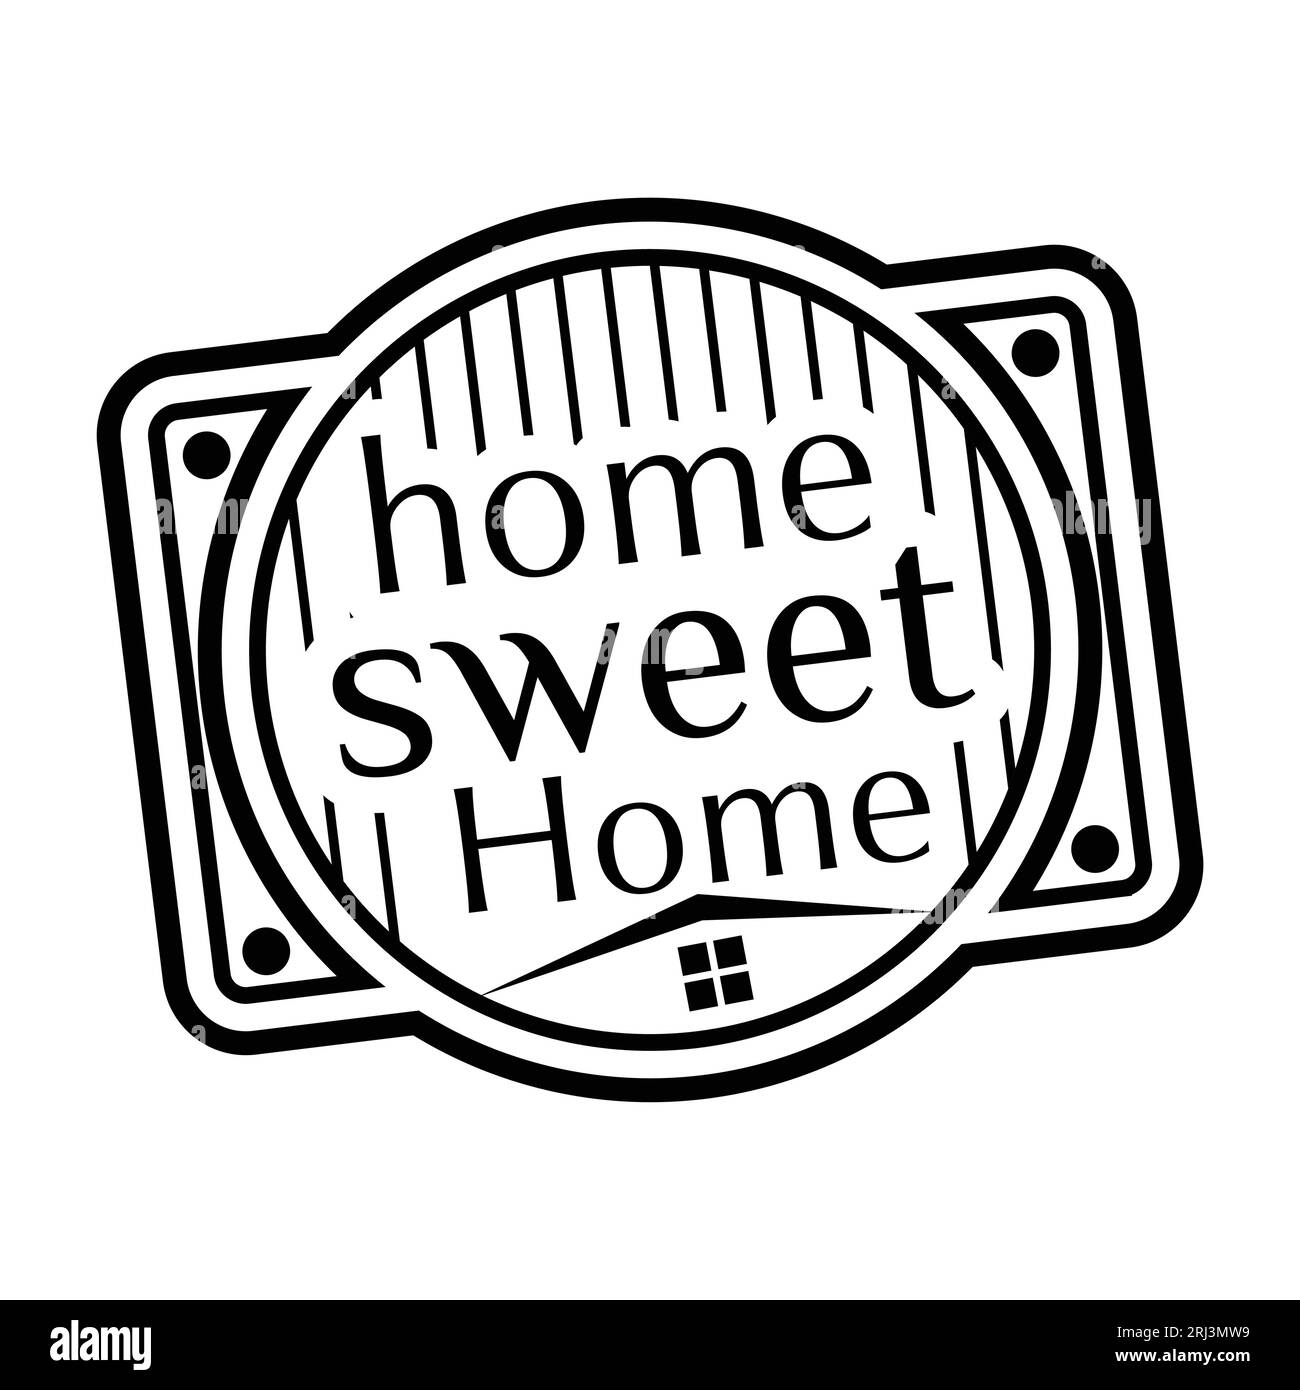 Home Sweet Home Gummistempel. Grunge-Design mit Staubkratzern. Die Effekte lassen sich leicht entfernen und sorgen so für ein klares, klares Aussehen. Die Farbe lässt sich leicht ändern. Stock Vektor